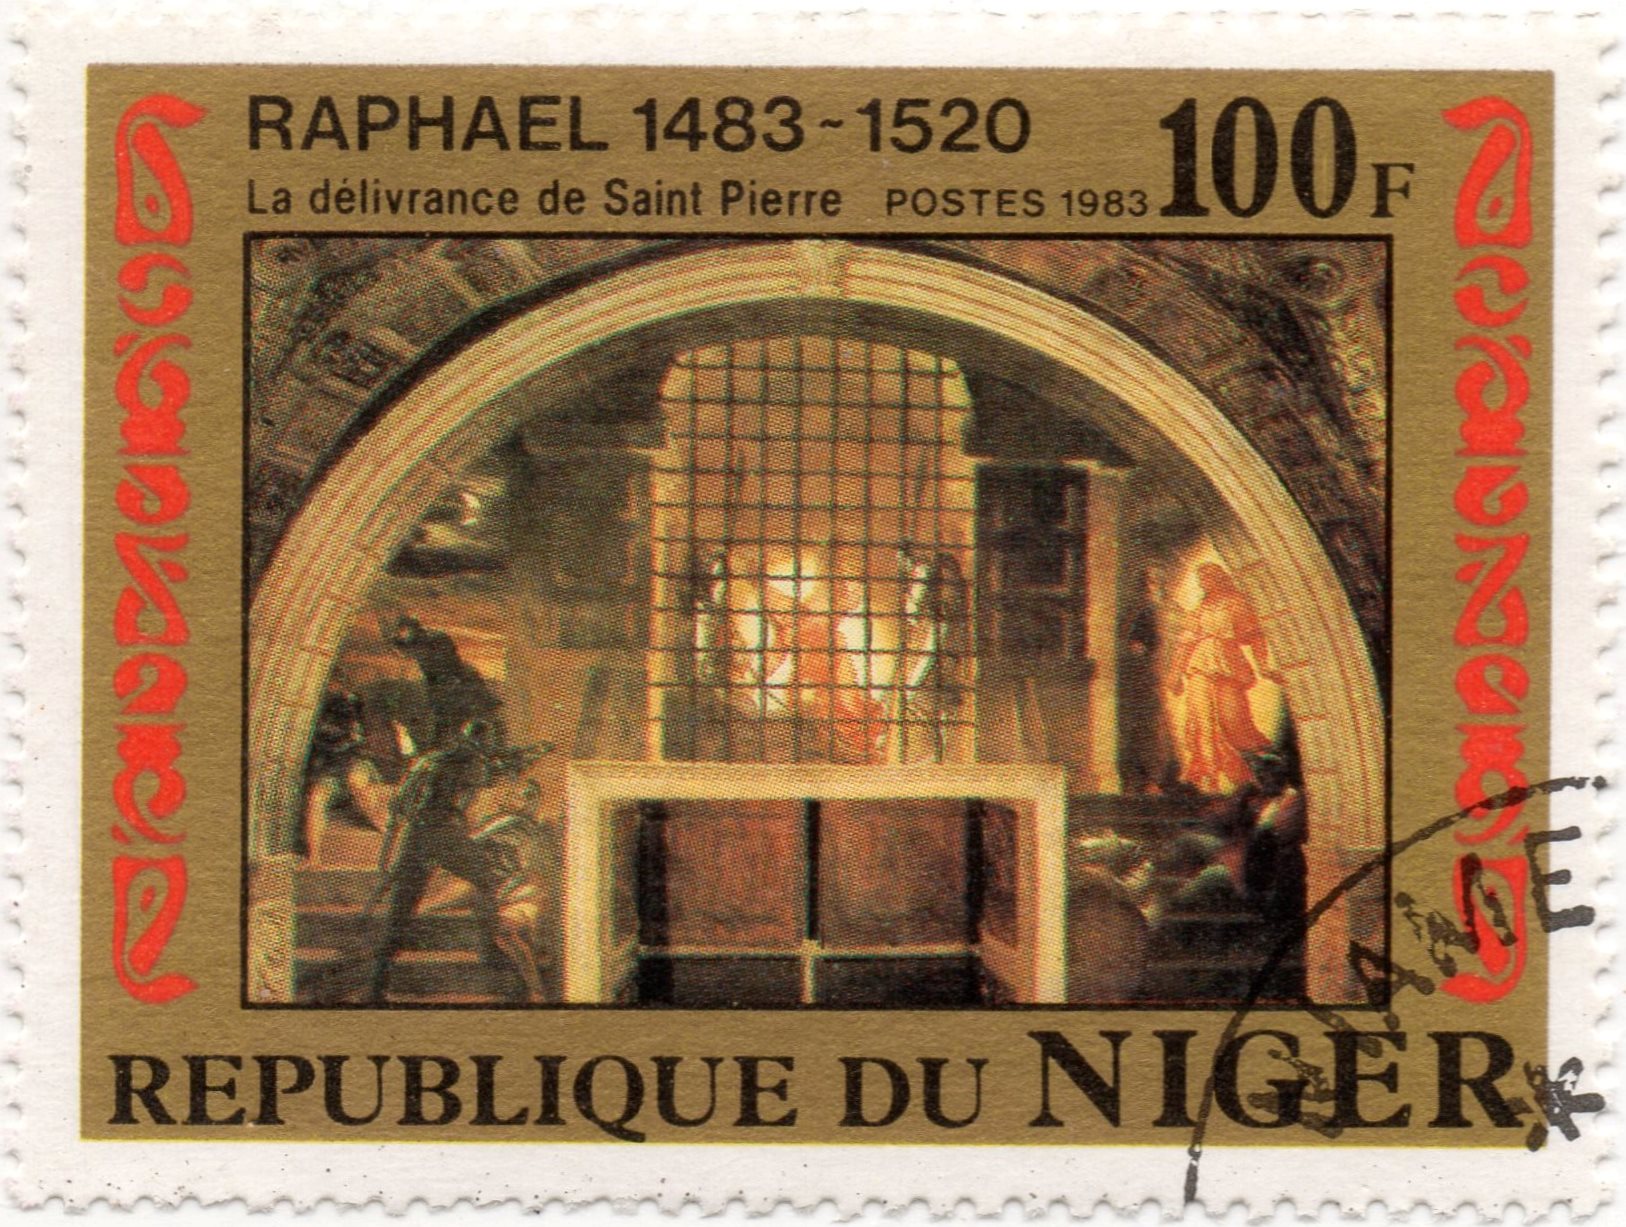 nft #3 Deliverance of Saint Peter Raphael 1483 - 1520 Republic of Niger 100 f. postes 1983